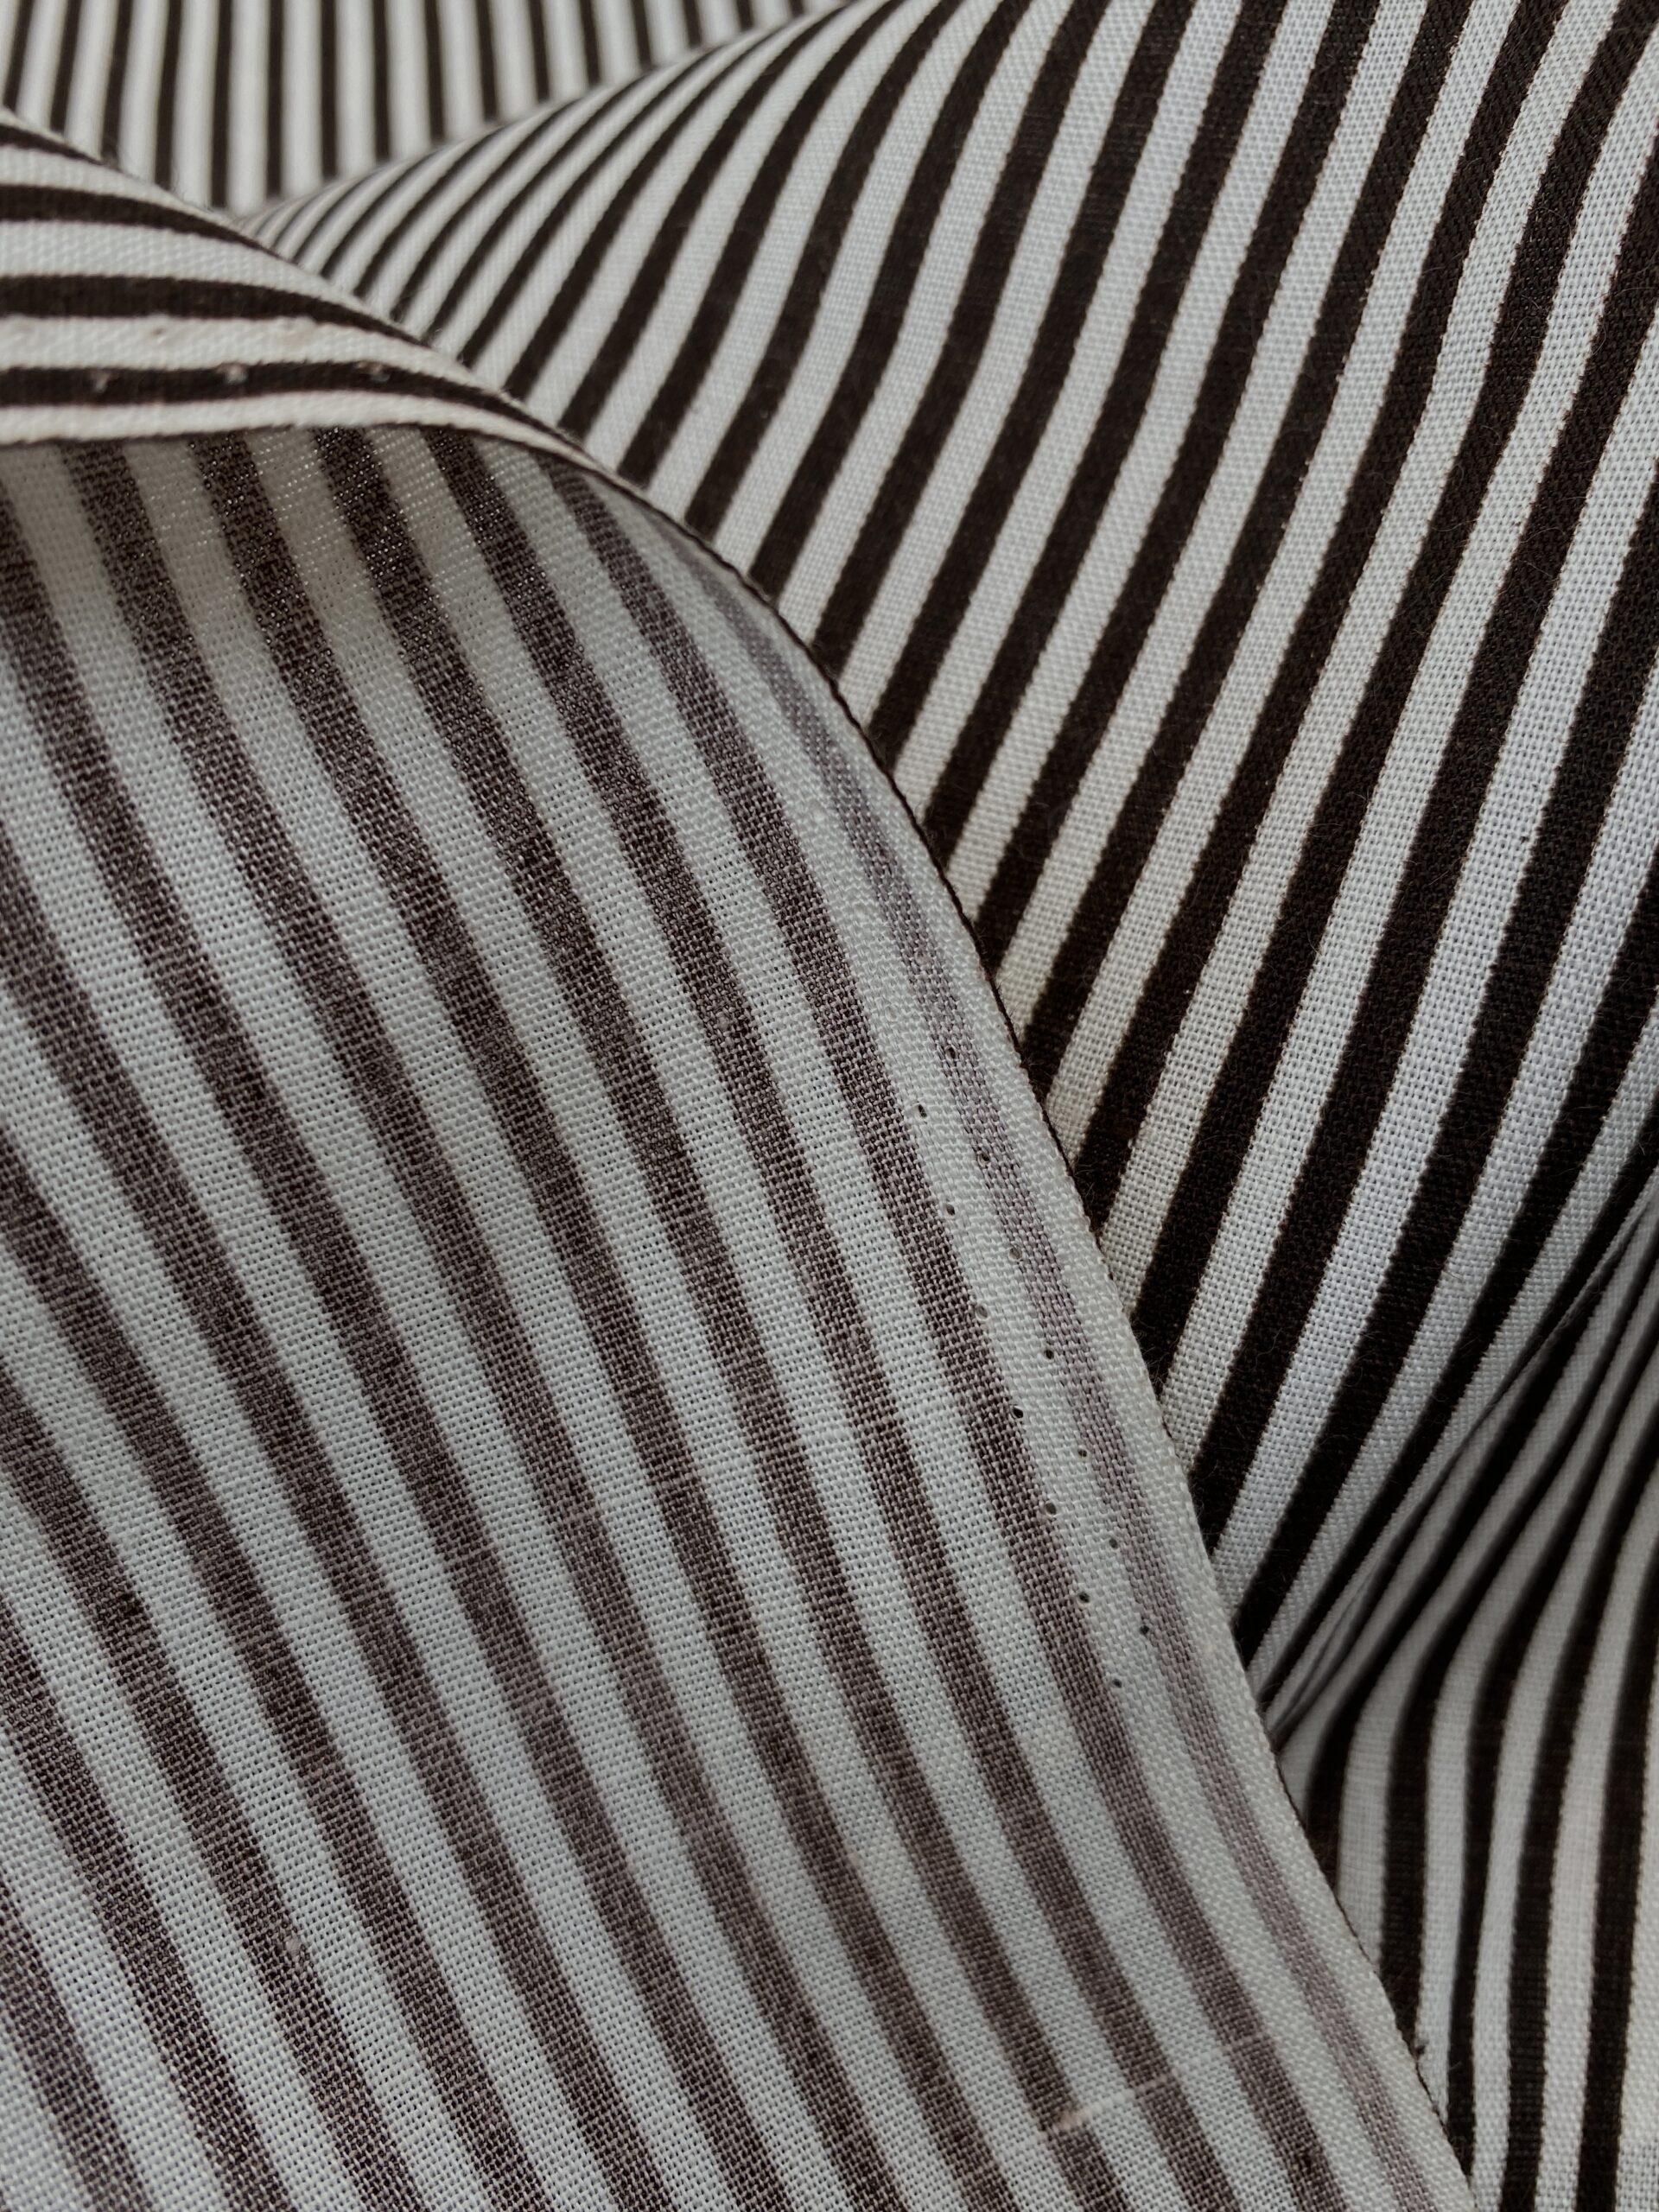 Vintage deadstock striped linen/cotton